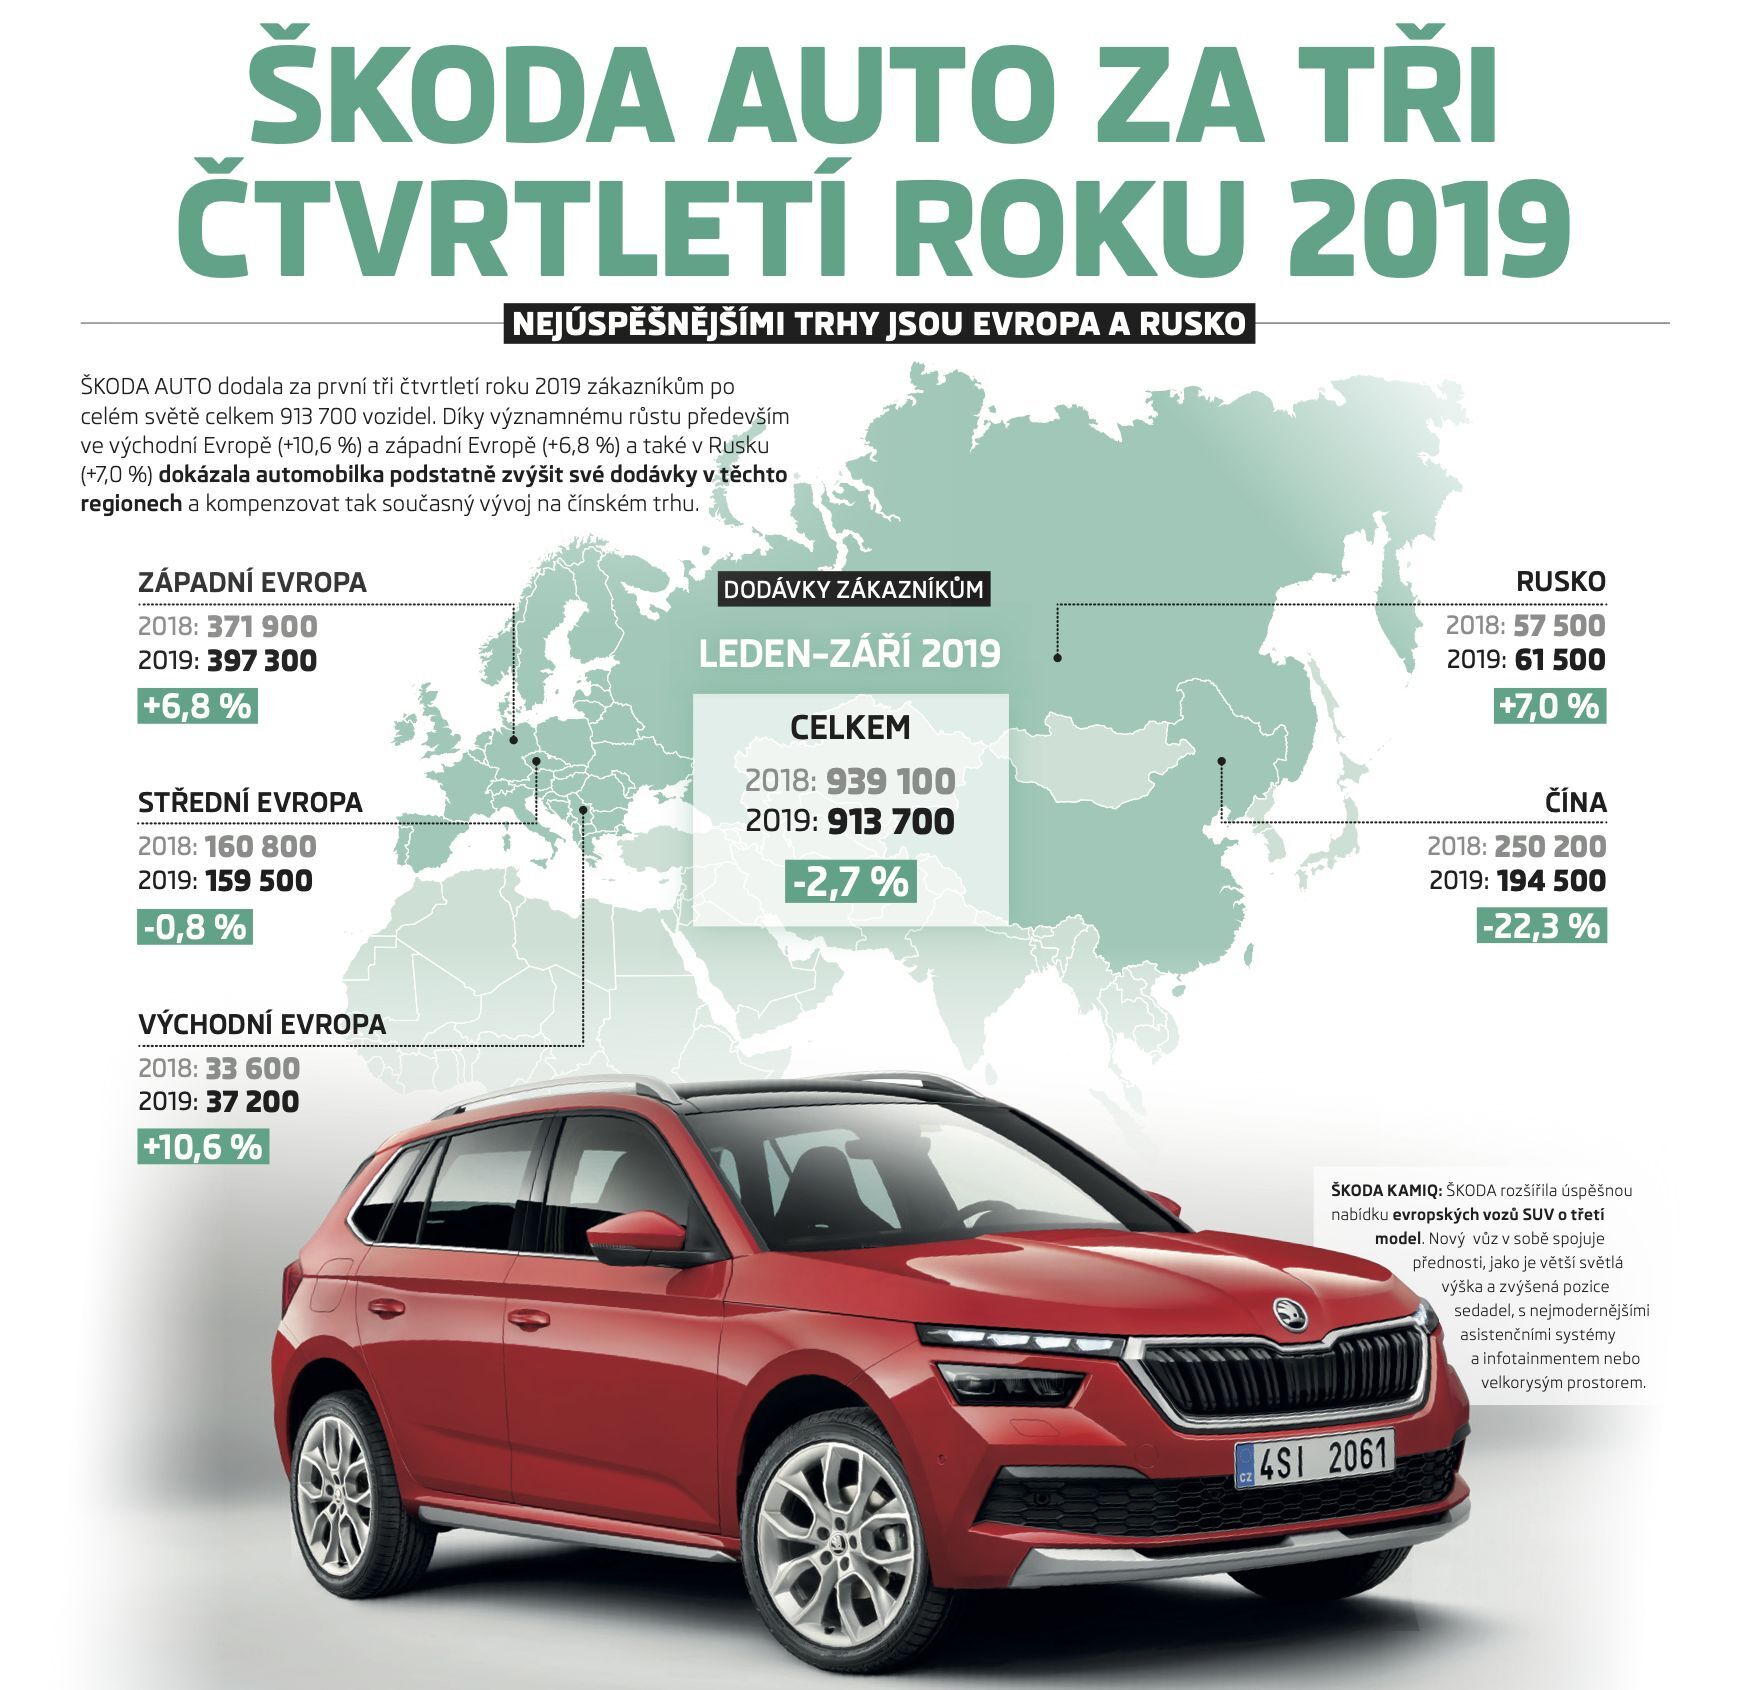 Prodeje Škody Auto za první tři čtvrtletí roku 2019